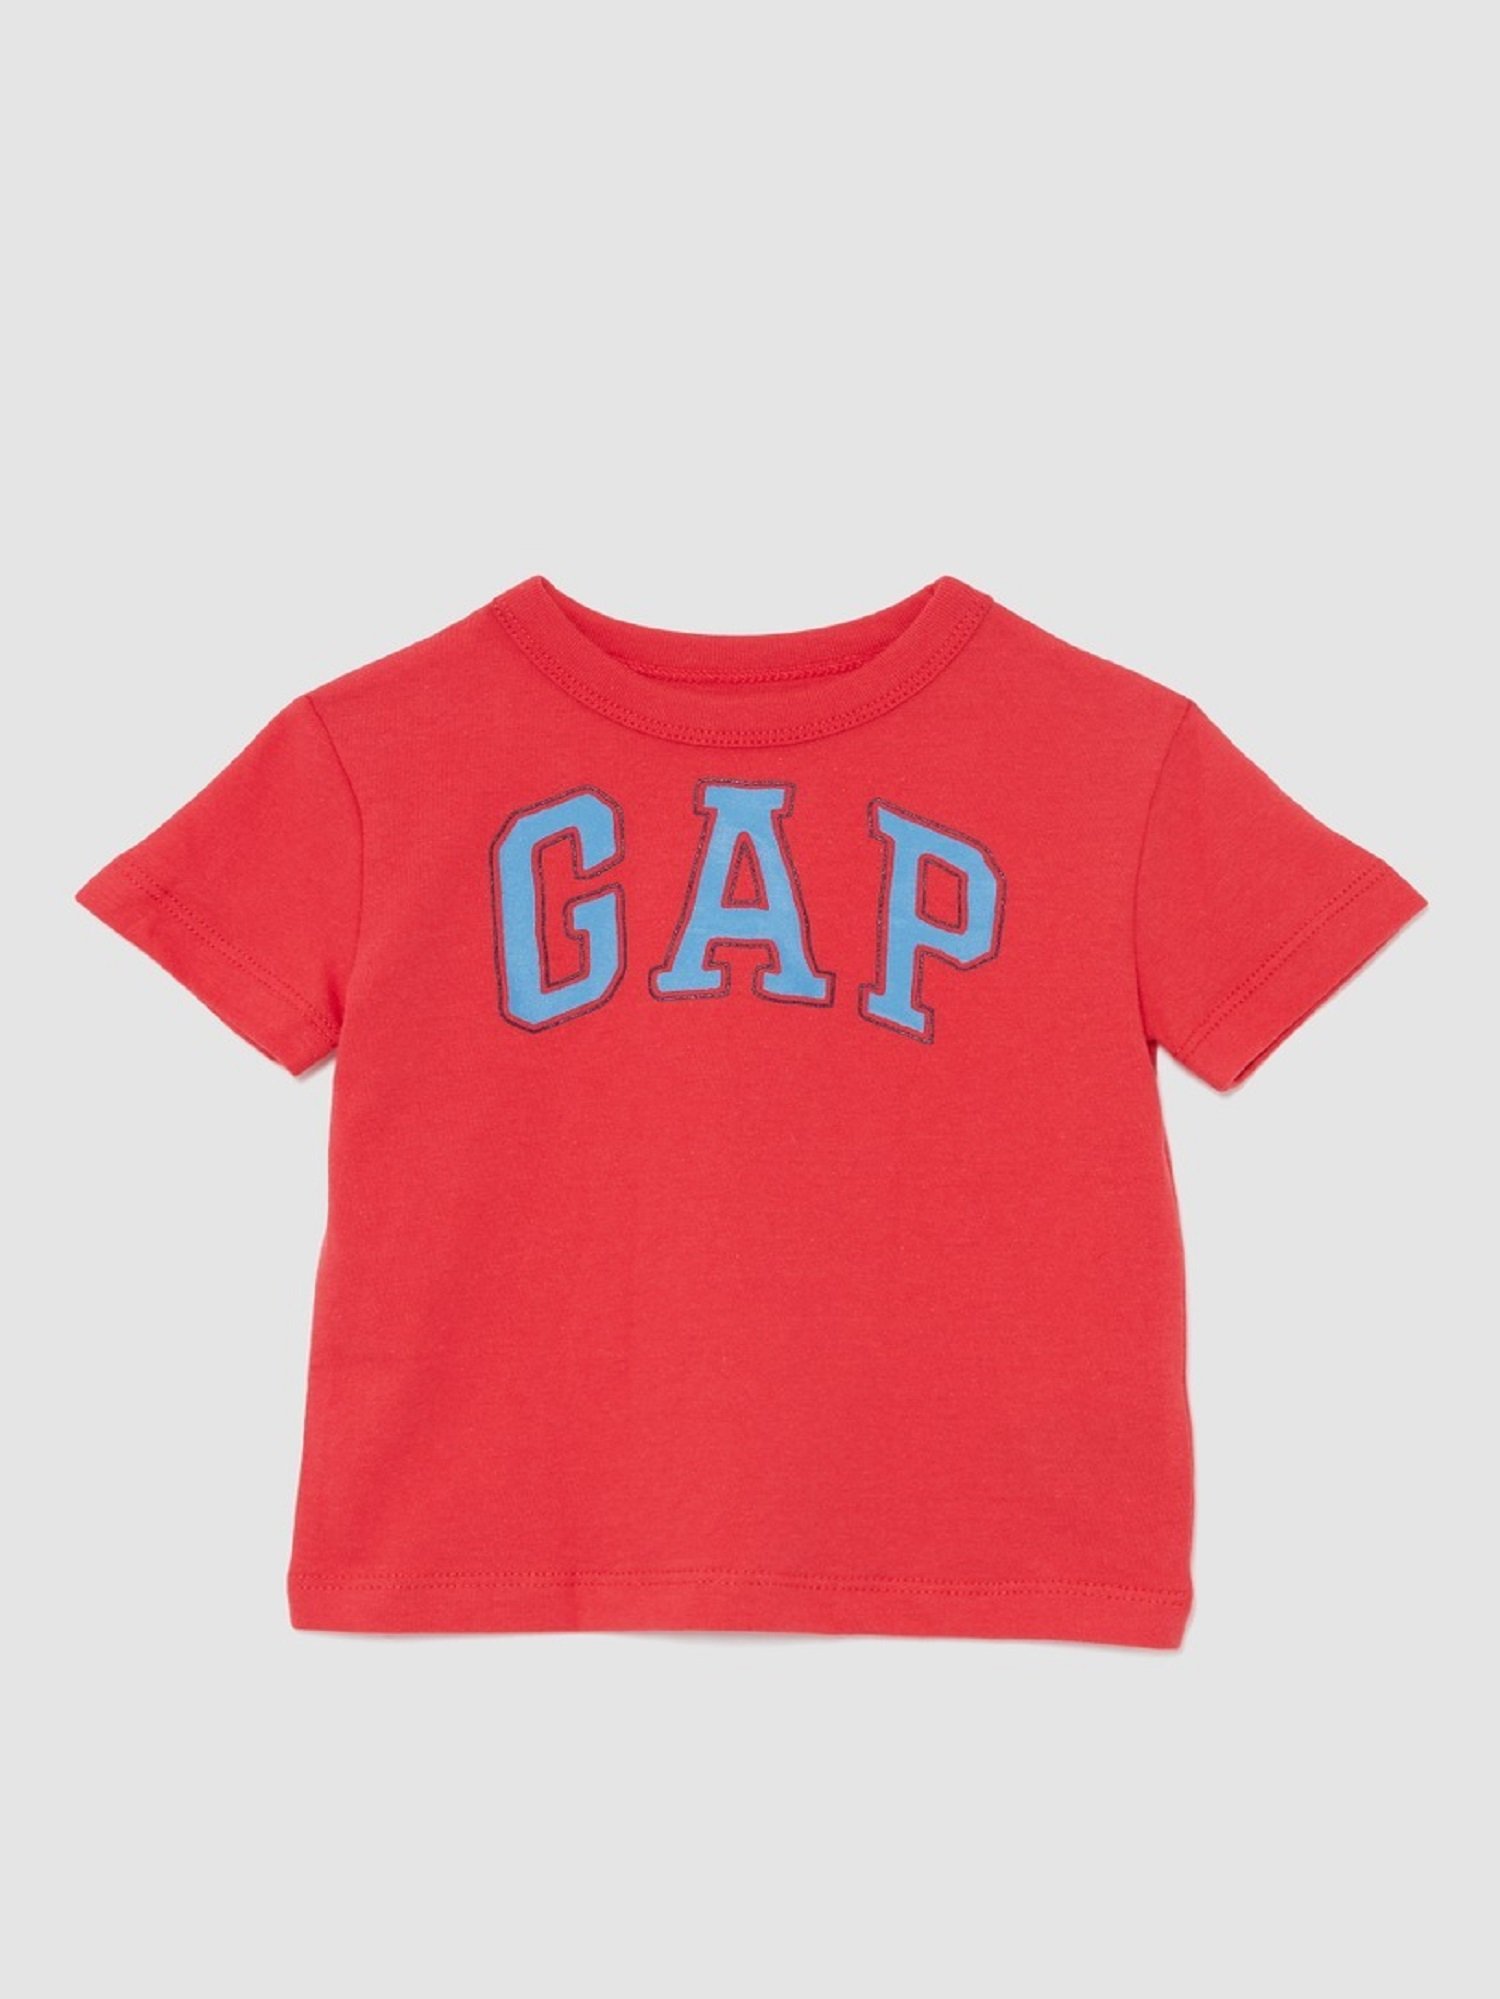 Erkek Bebek Gap Logo Kısa Kollu T-Shirt product image